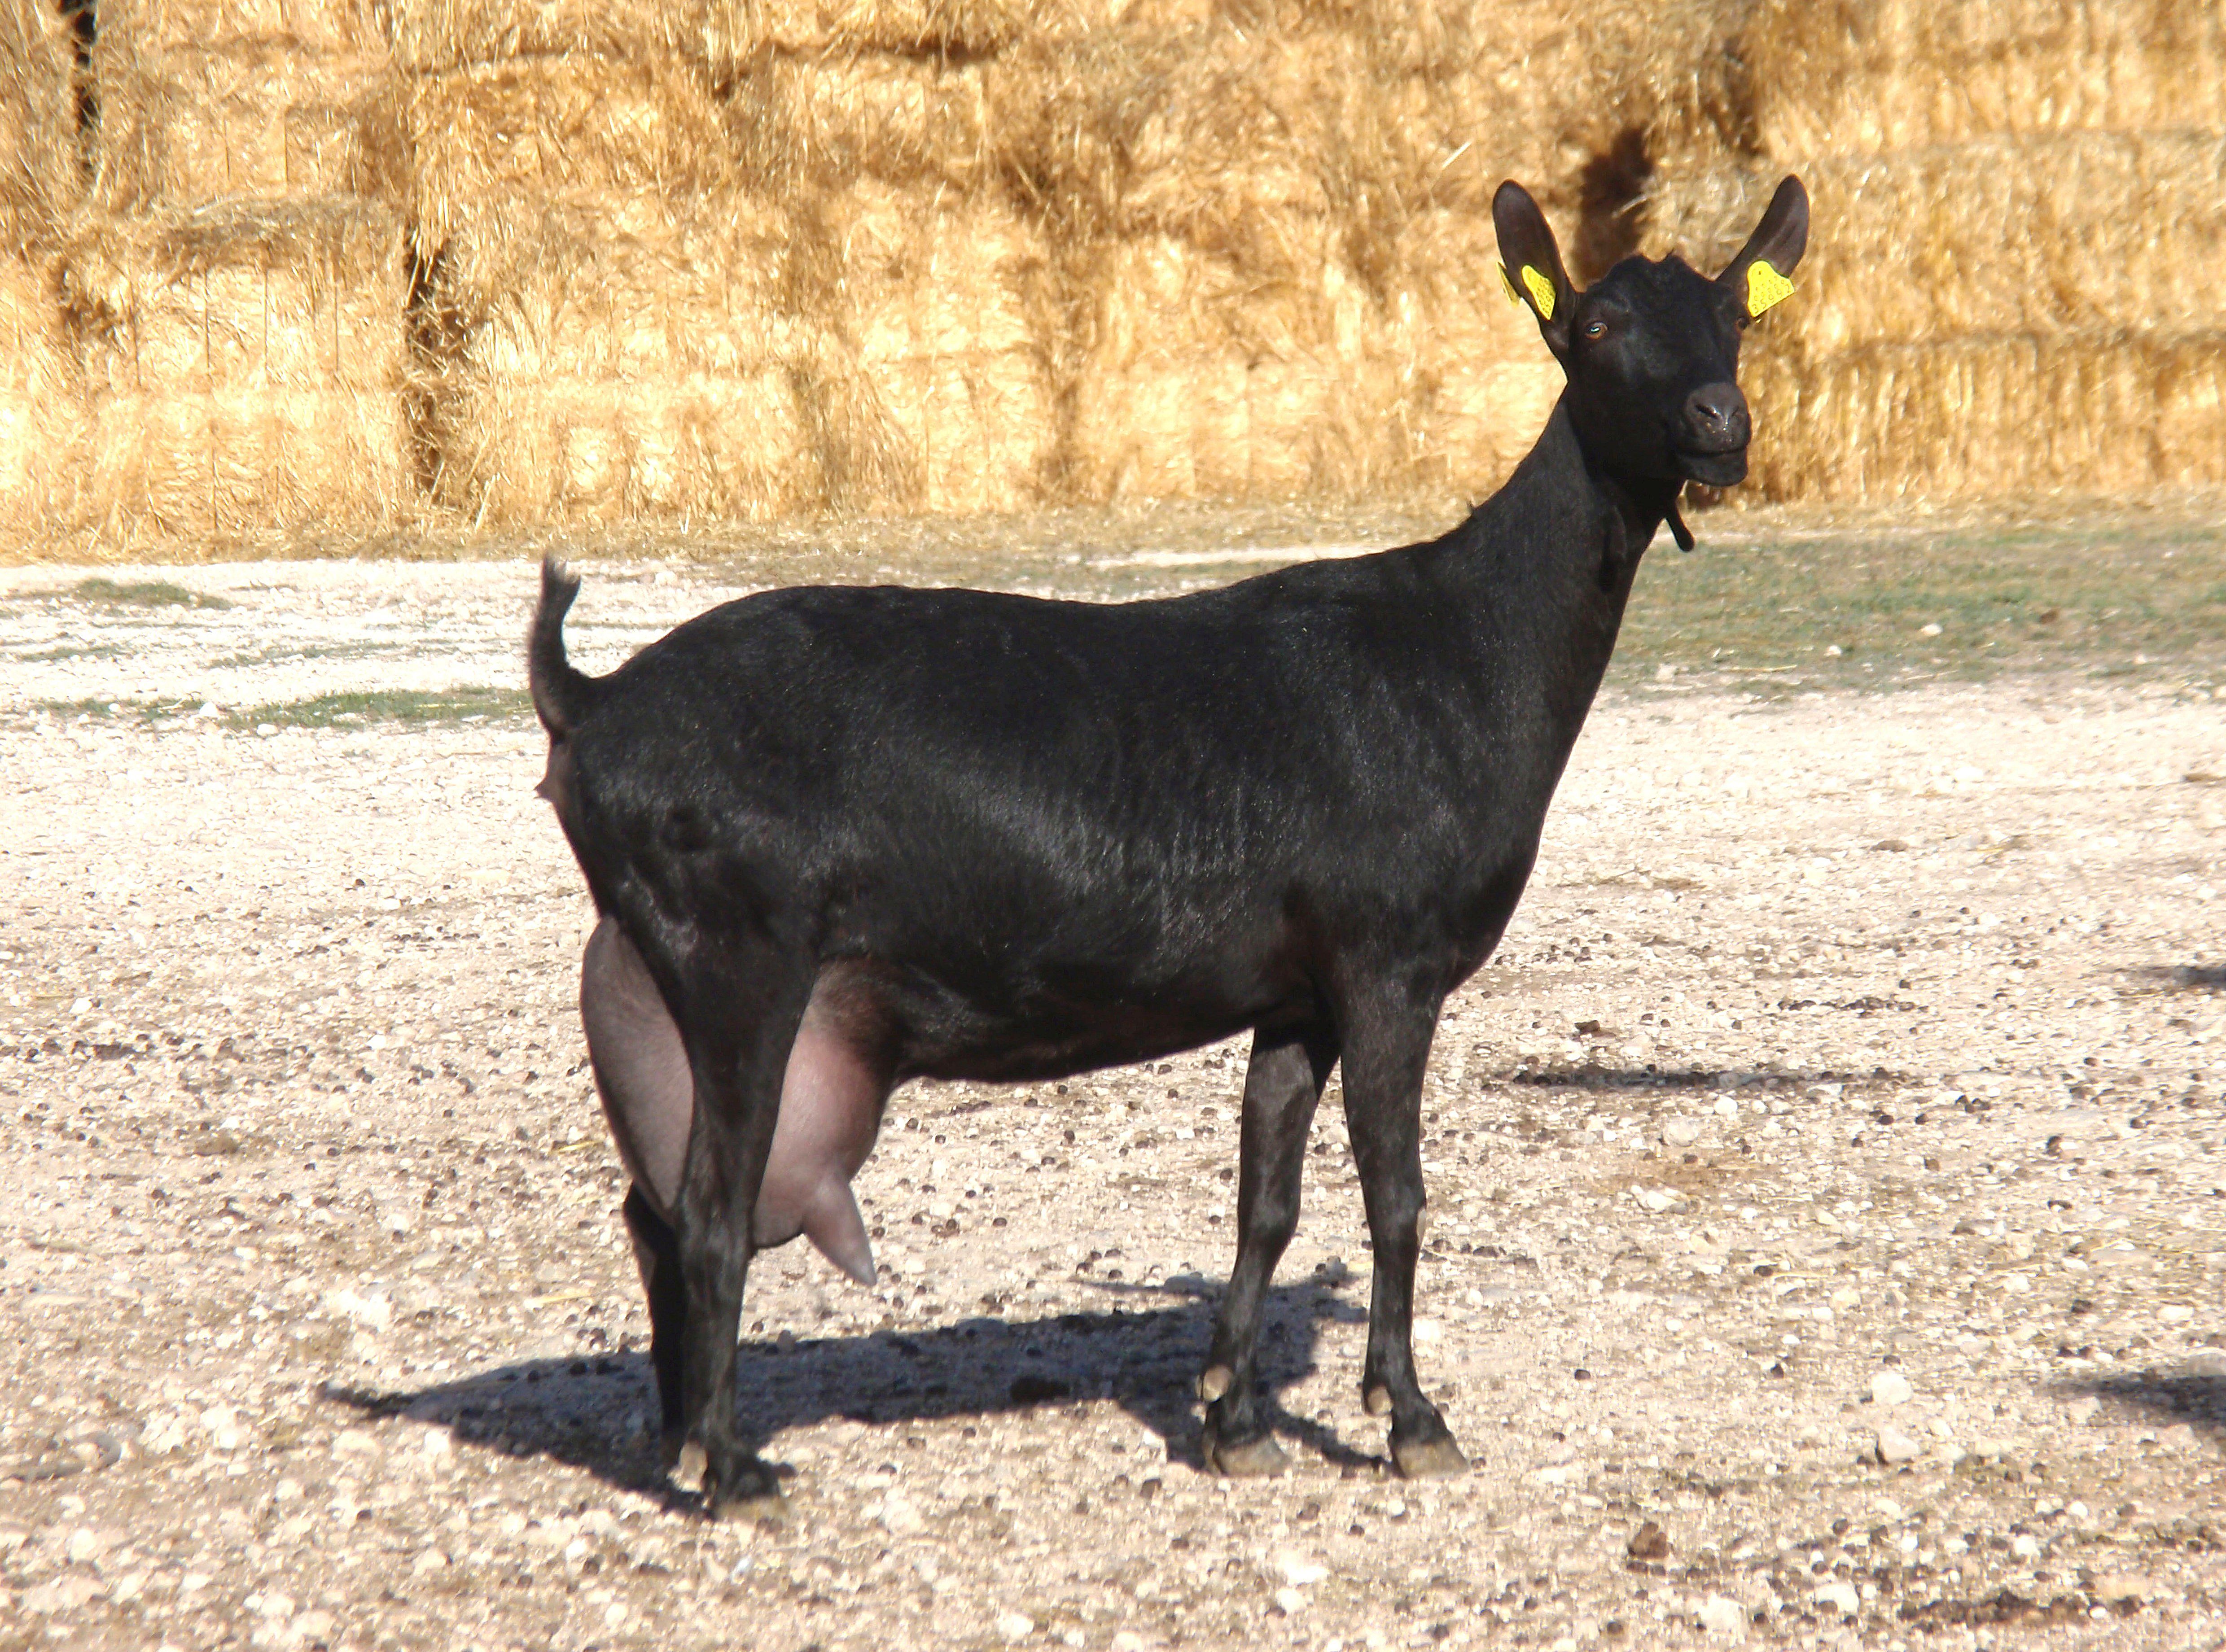 AUTOR: Salvador Ángel Lozano Palazón.
AÑO: 2010.
Sexo: Cabra en lactación.
Imagen facilitada por la ASOCIACIÓN ESPAÑOLA DE CRIADORES DE LA CABRA MURCIANO-GRANADINA (ACRIMUR). 